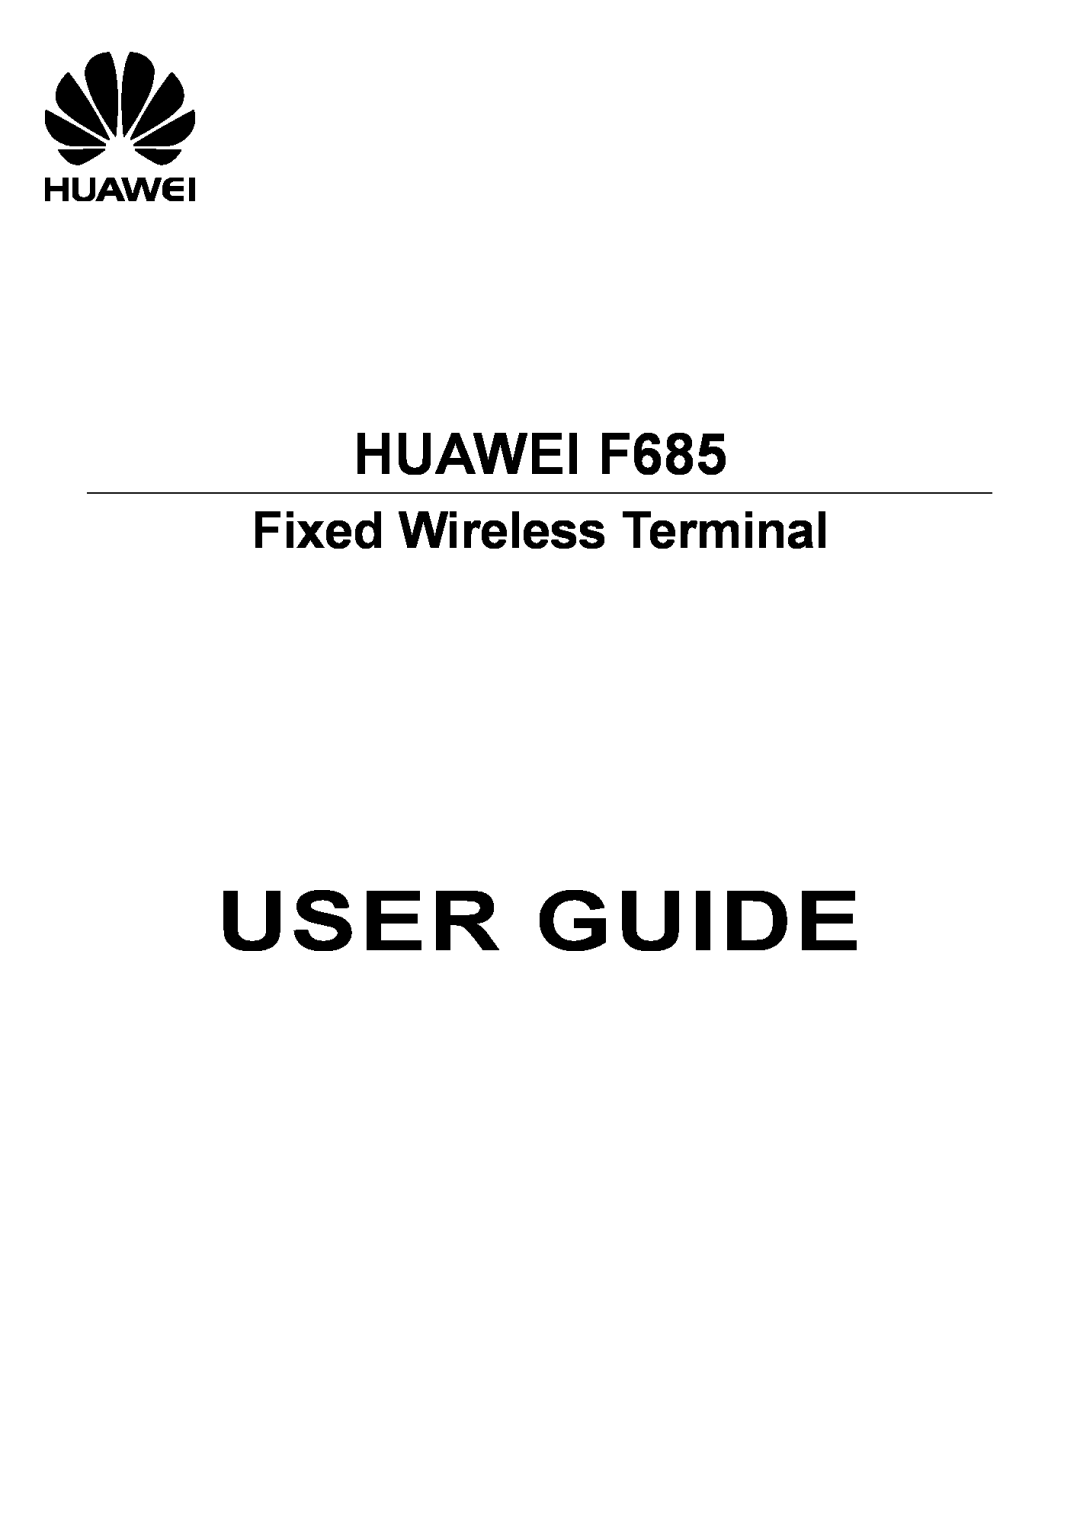 Huawei manual User Guide, HUAWEI F685, Fixed Wireless Terminal 